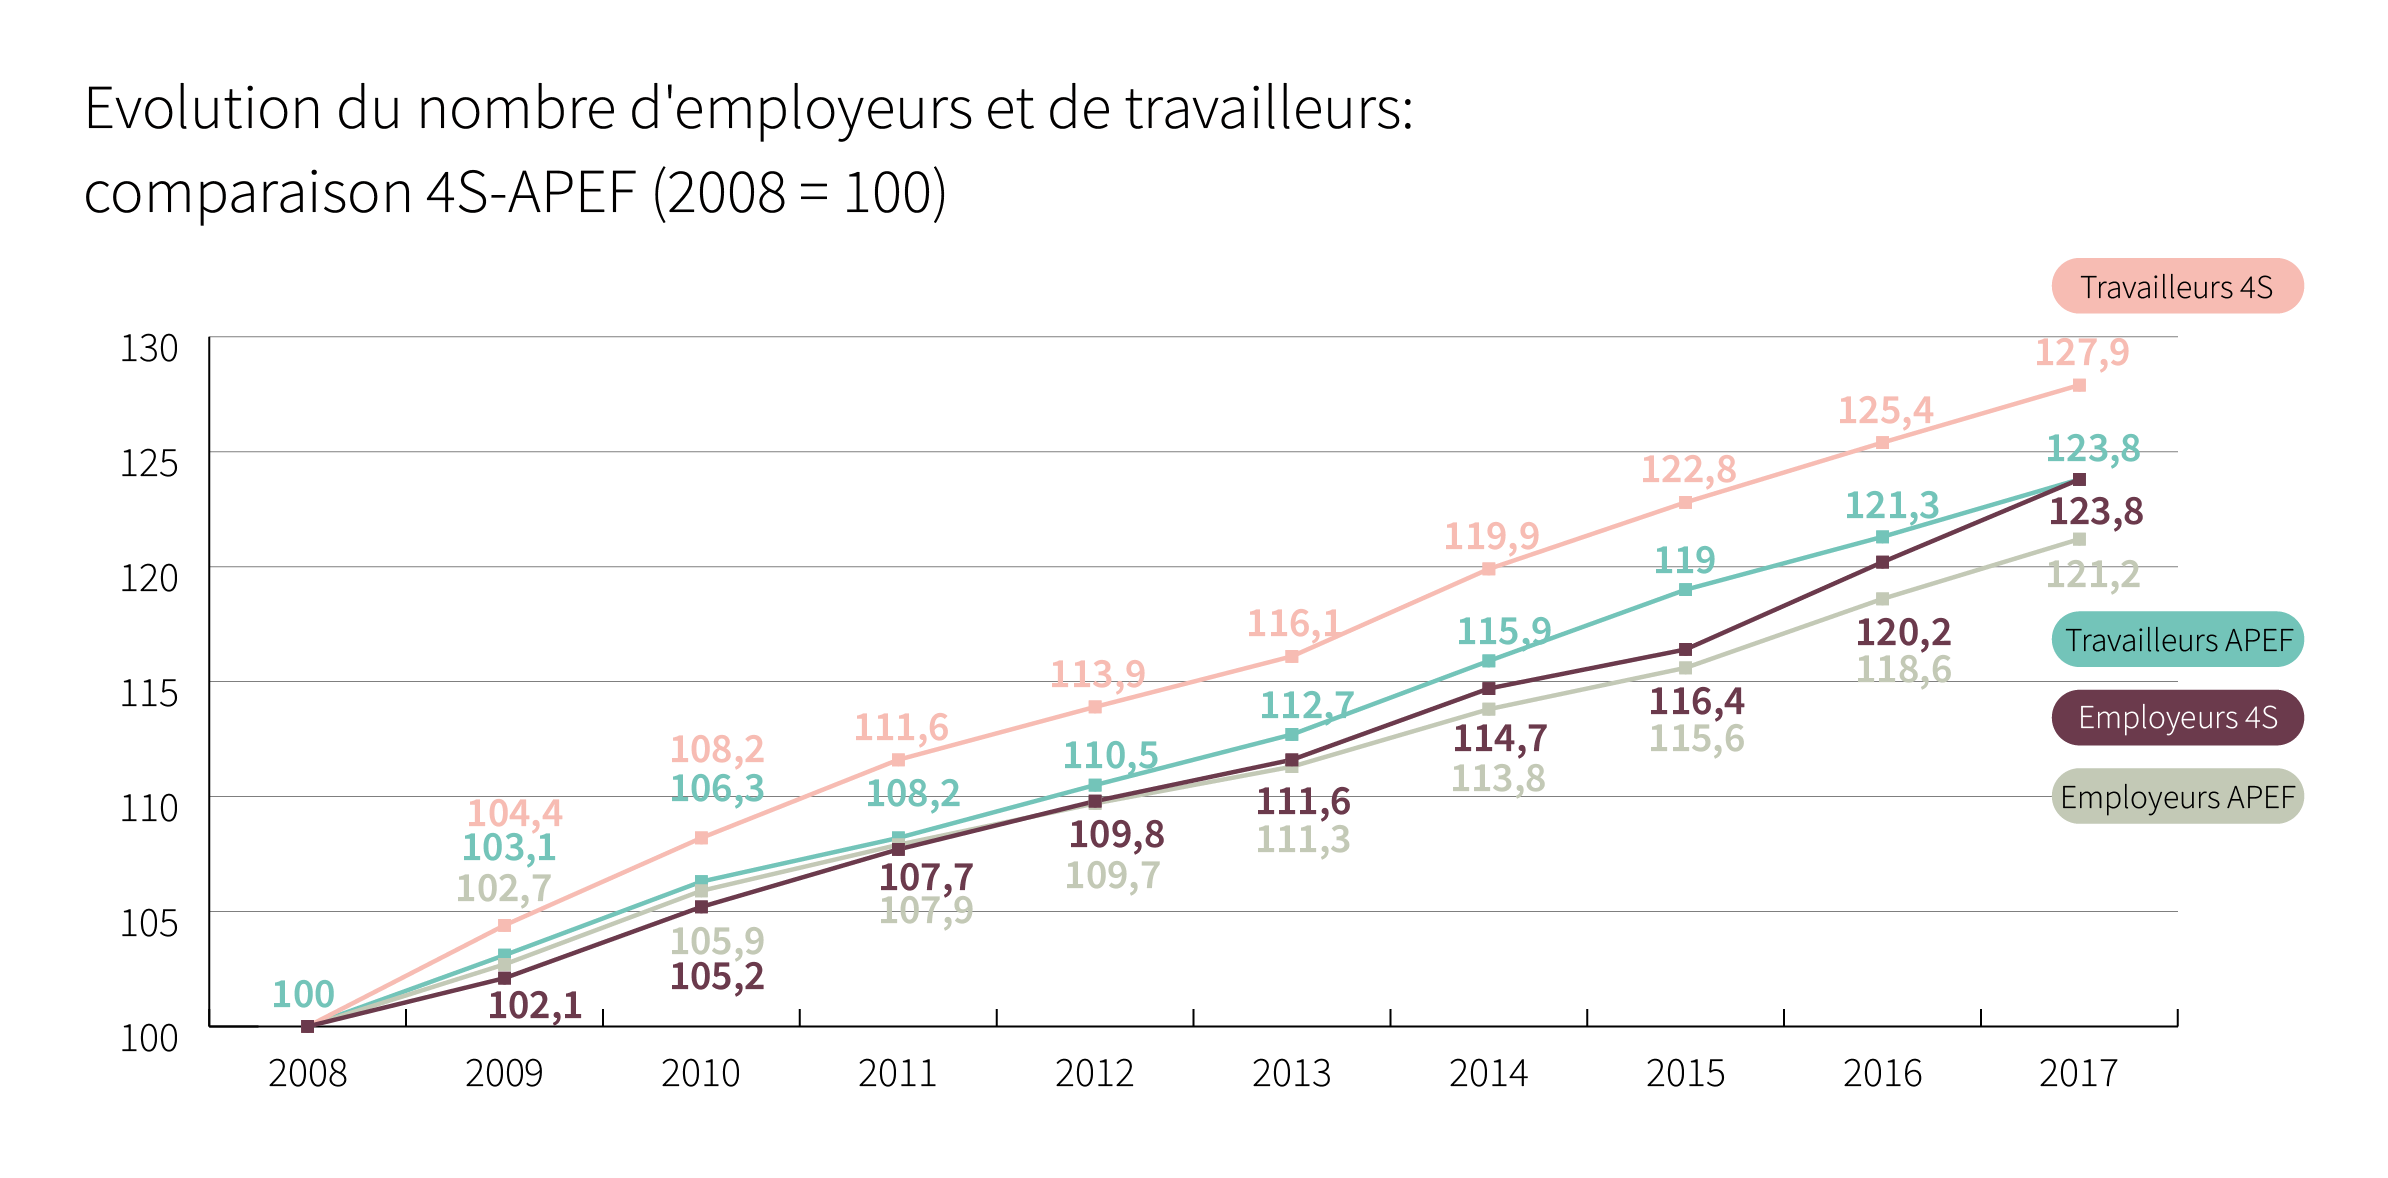 Evolution du nombre d’employeurs et de travailleurs: comparaison 4S-APEF (2008 = 100) - Cliquez pour agrandir